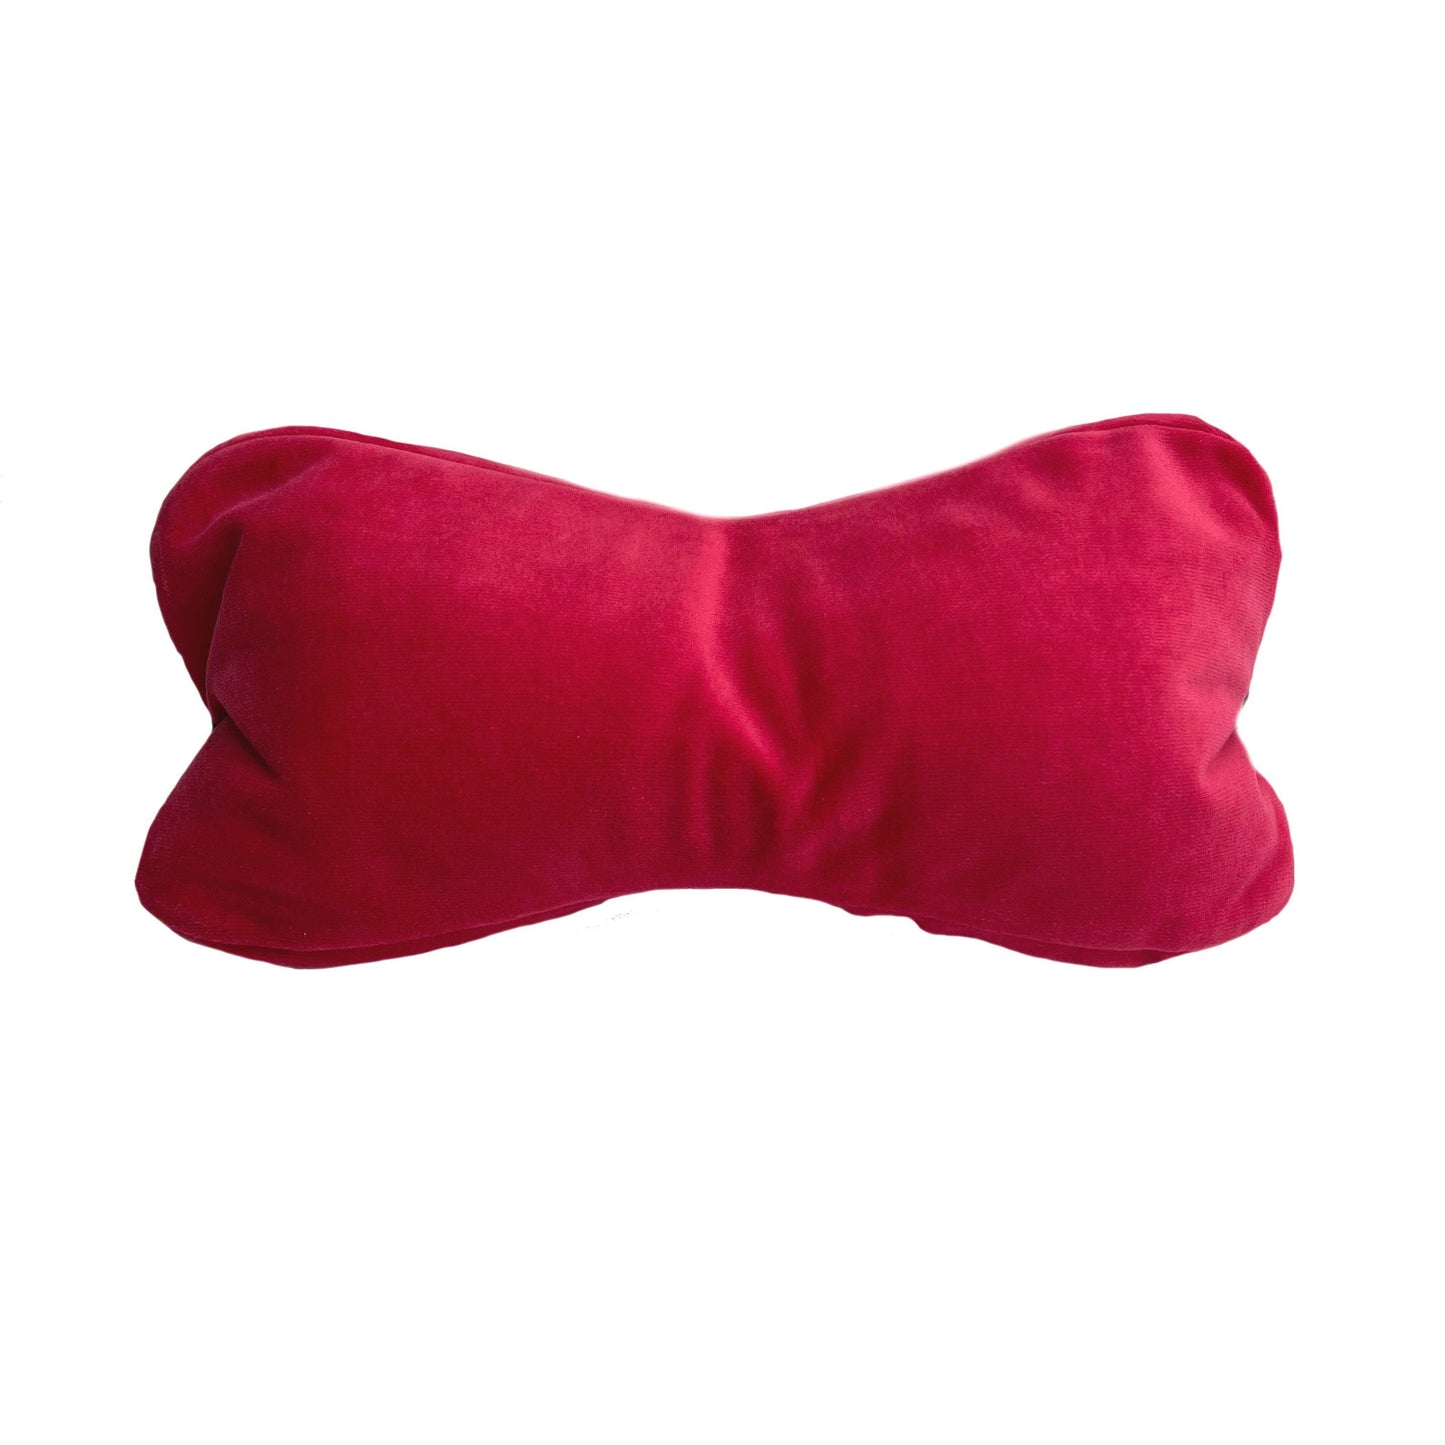 large dog cushion